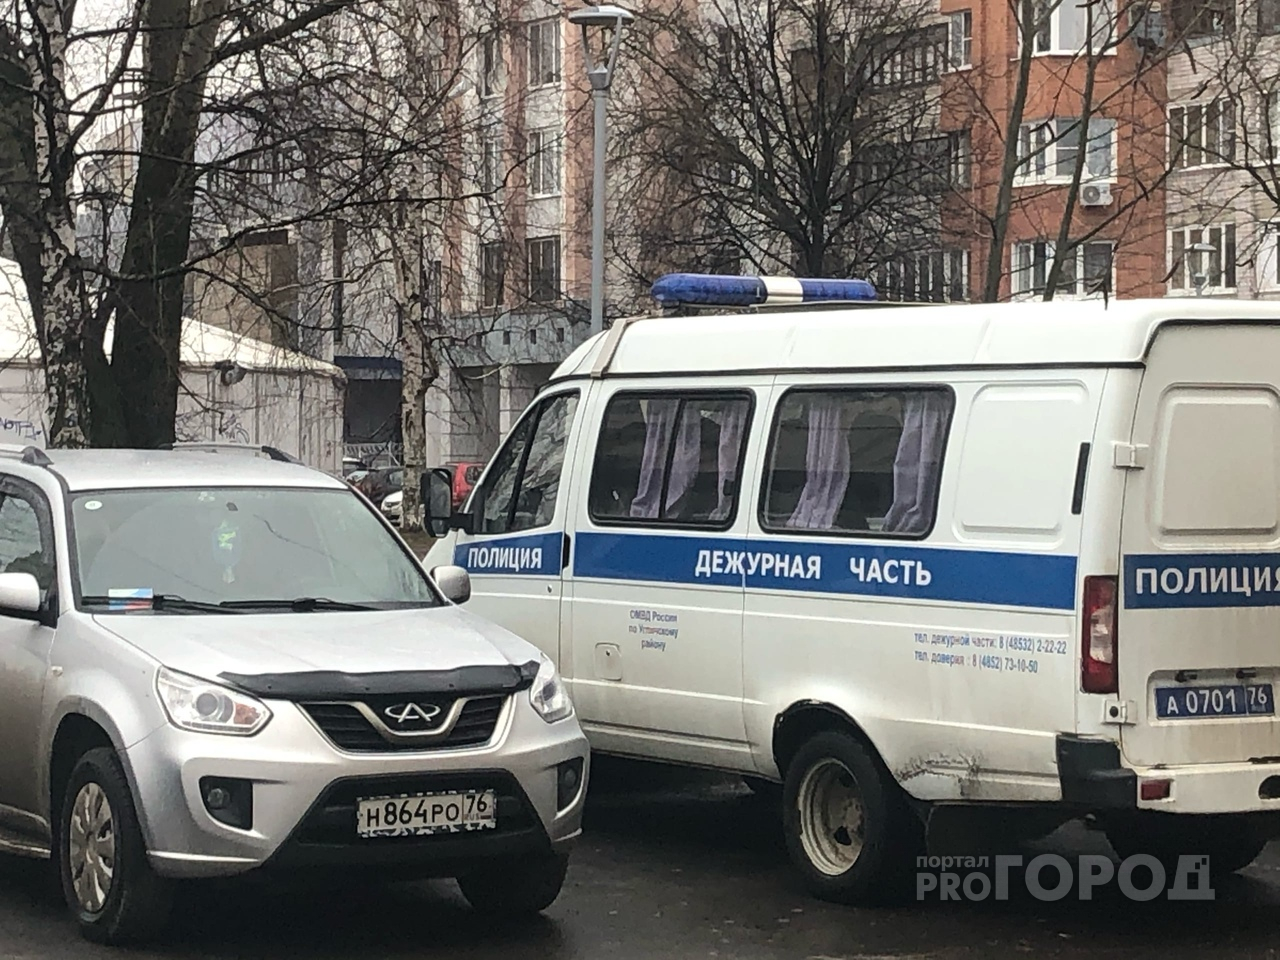 Диагноз по телефону и новые выплаты: из-за пандемии в Ярославле активизировались воры